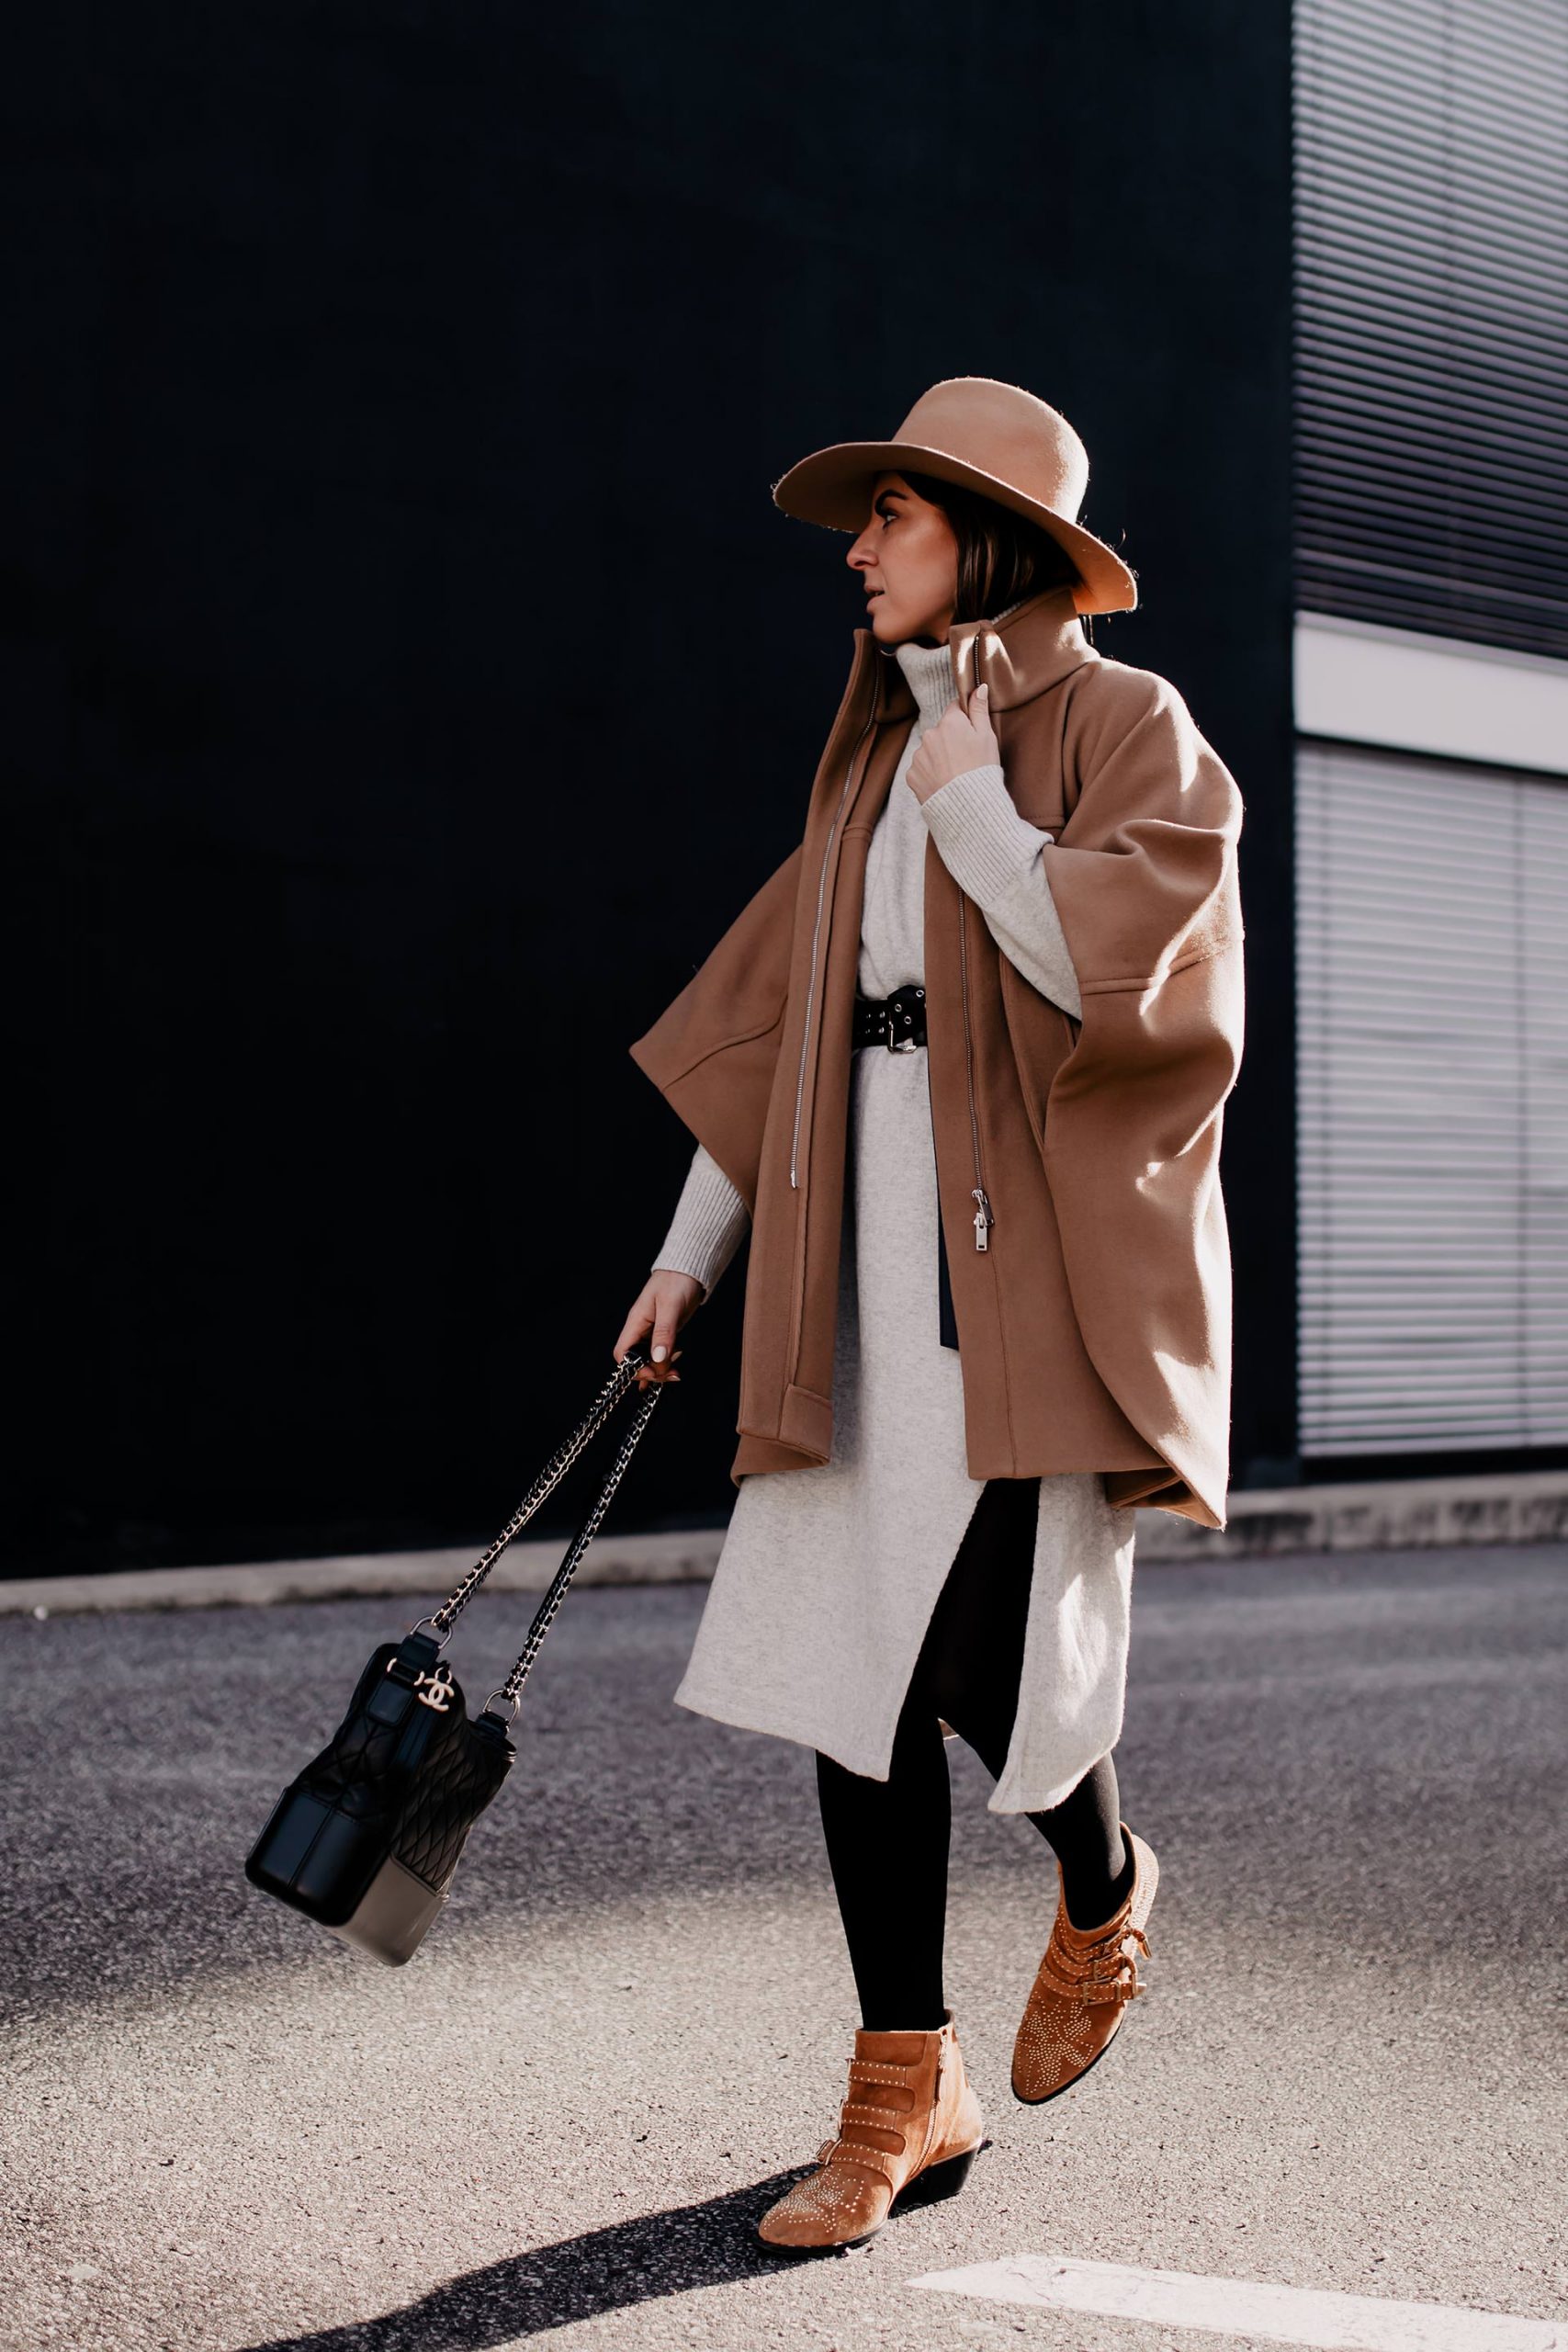 Am Modeblog liest du heute, wie gut man ein Cape kombinieren kann. Das passende Winter-Outfit gibt es kostenlos dazu und zahlreiche Shopping-Tipps für wunderschöne Cape-Outfits! www.whoismocca.com #cape #winteroutfit #modetrends